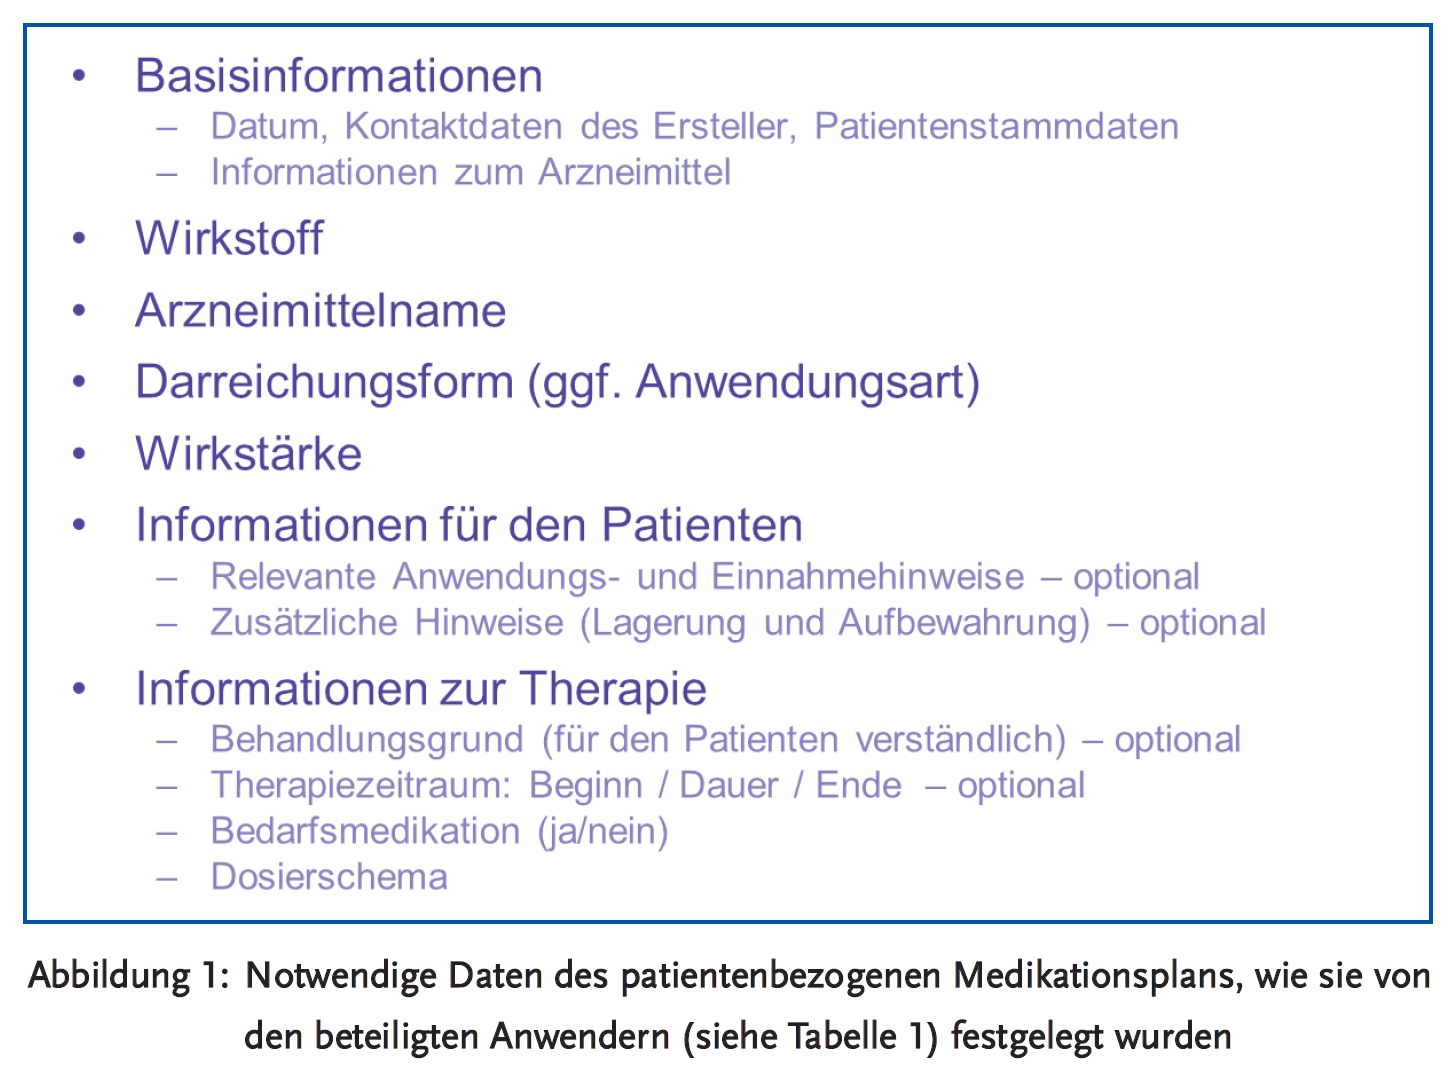 Abbildung 1: Notwendige Daten des patientenbezogenen Medikationsplans, wie sie von den beteiligten Anwendern (siehe Tabelle 1) festgelegt wurden